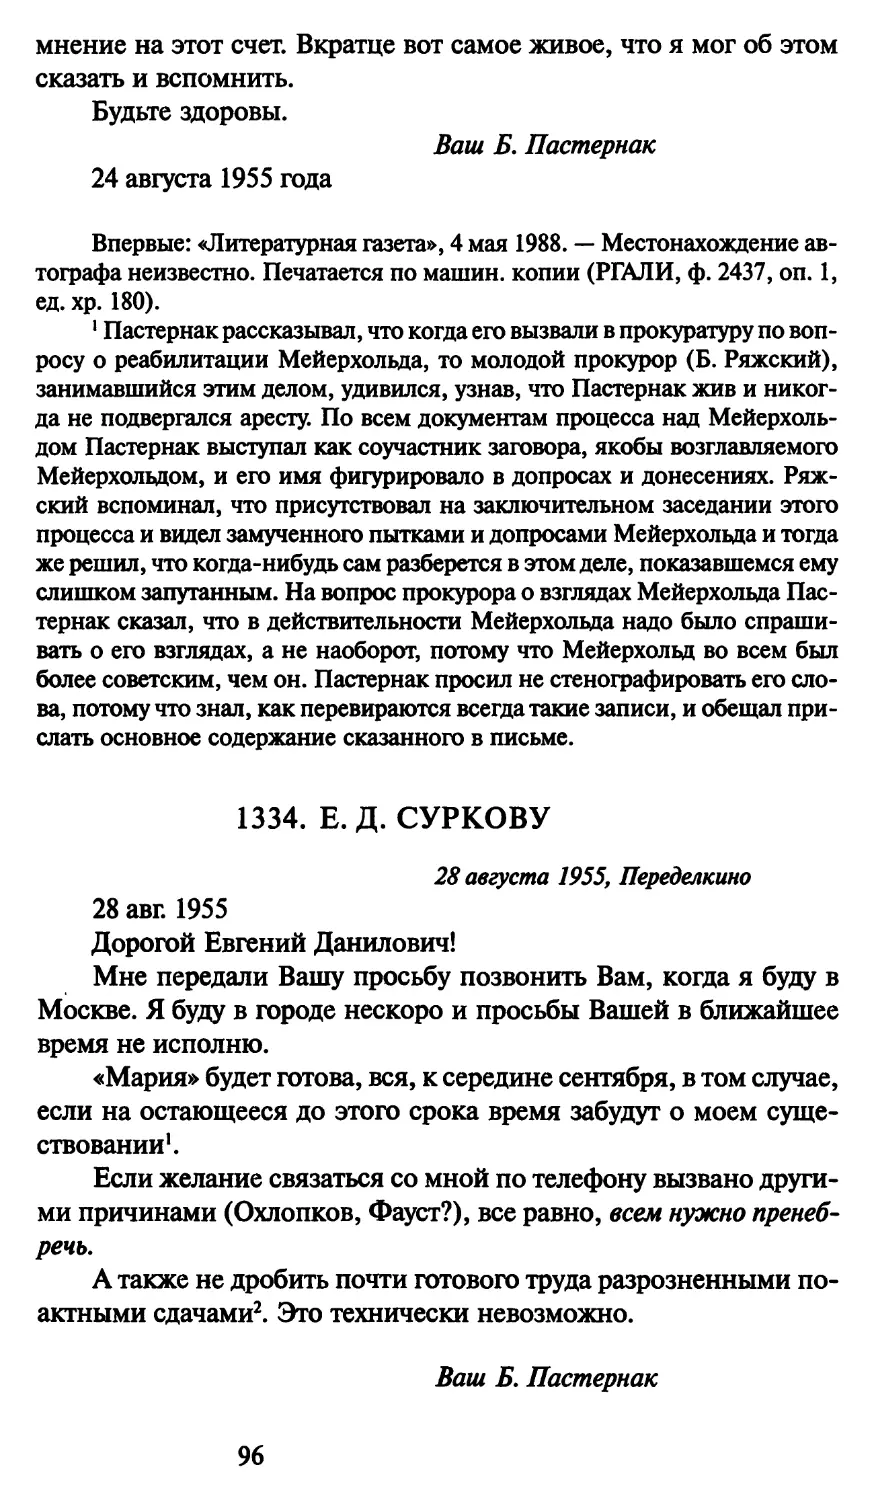 1334. Е. Д. Суркову 28 августа 1955